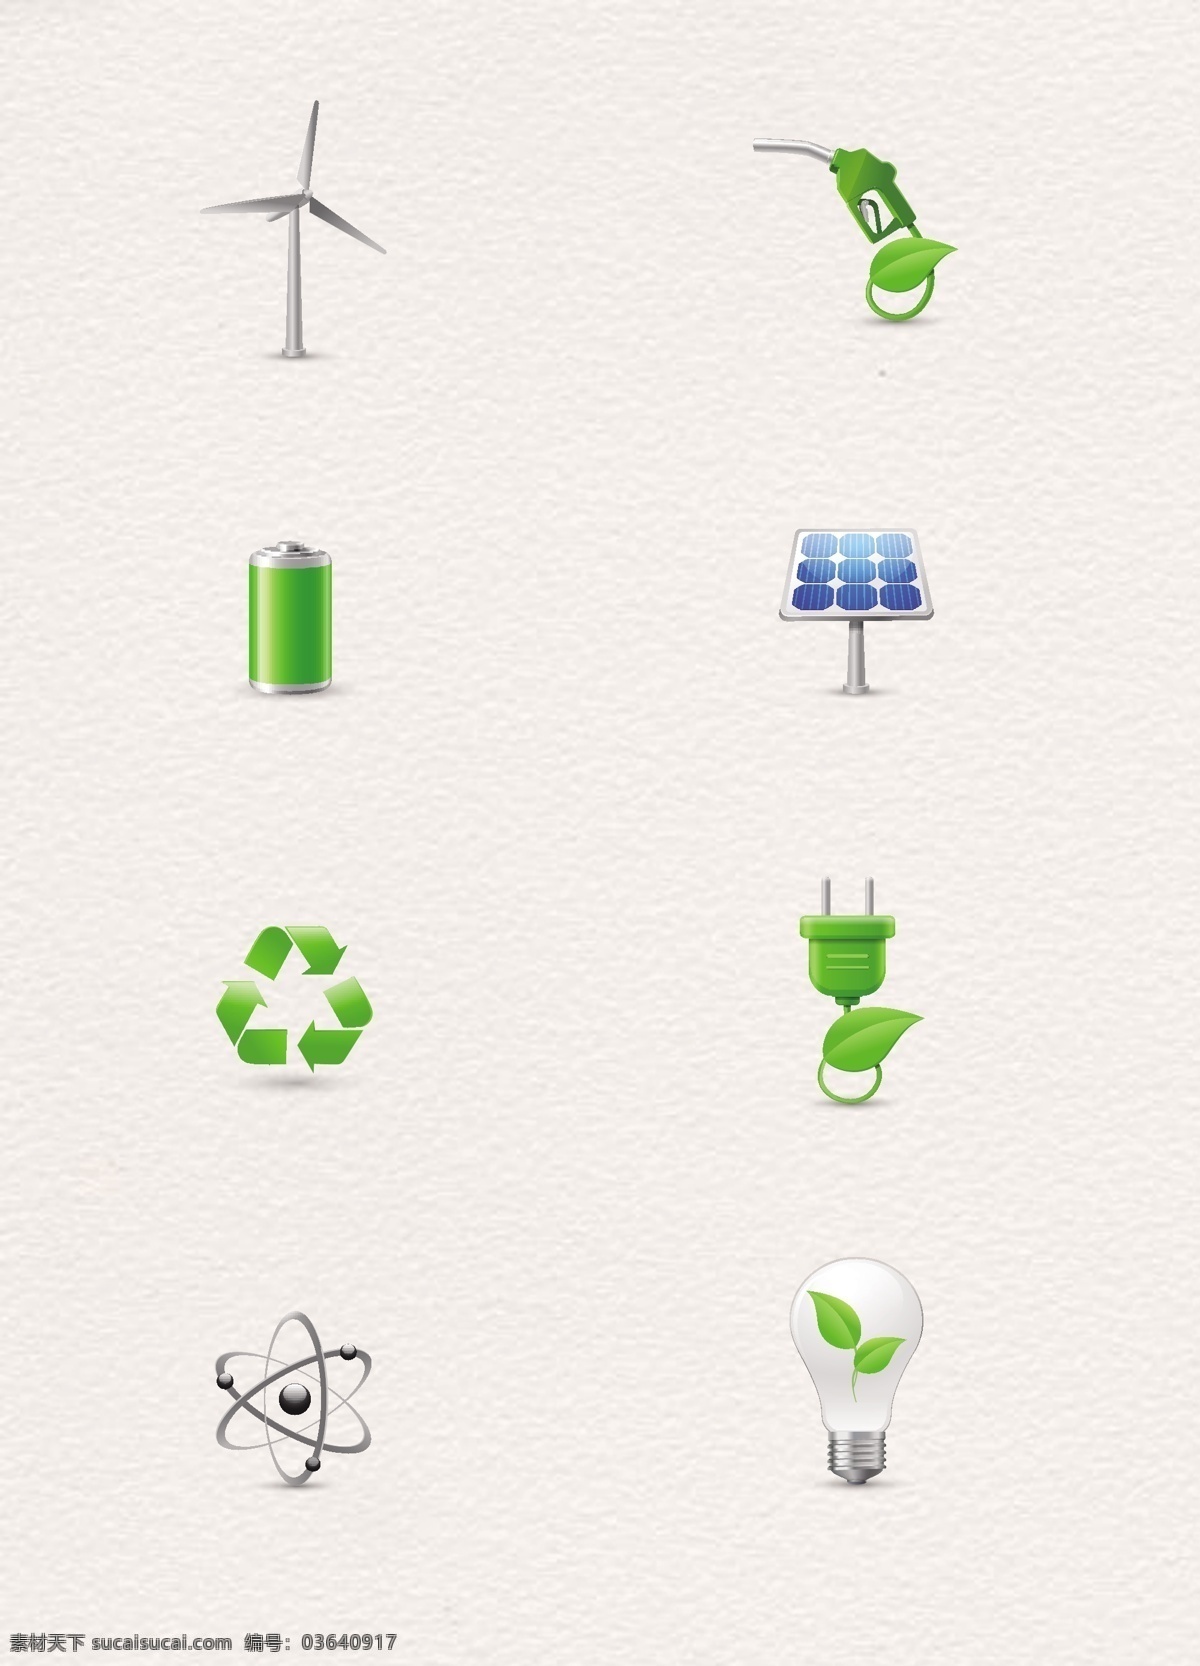 绿色环保 能源 图标 立体设计 立体 卡通 绿色 环保 灯泡 手绘 节能 太阳能 插座